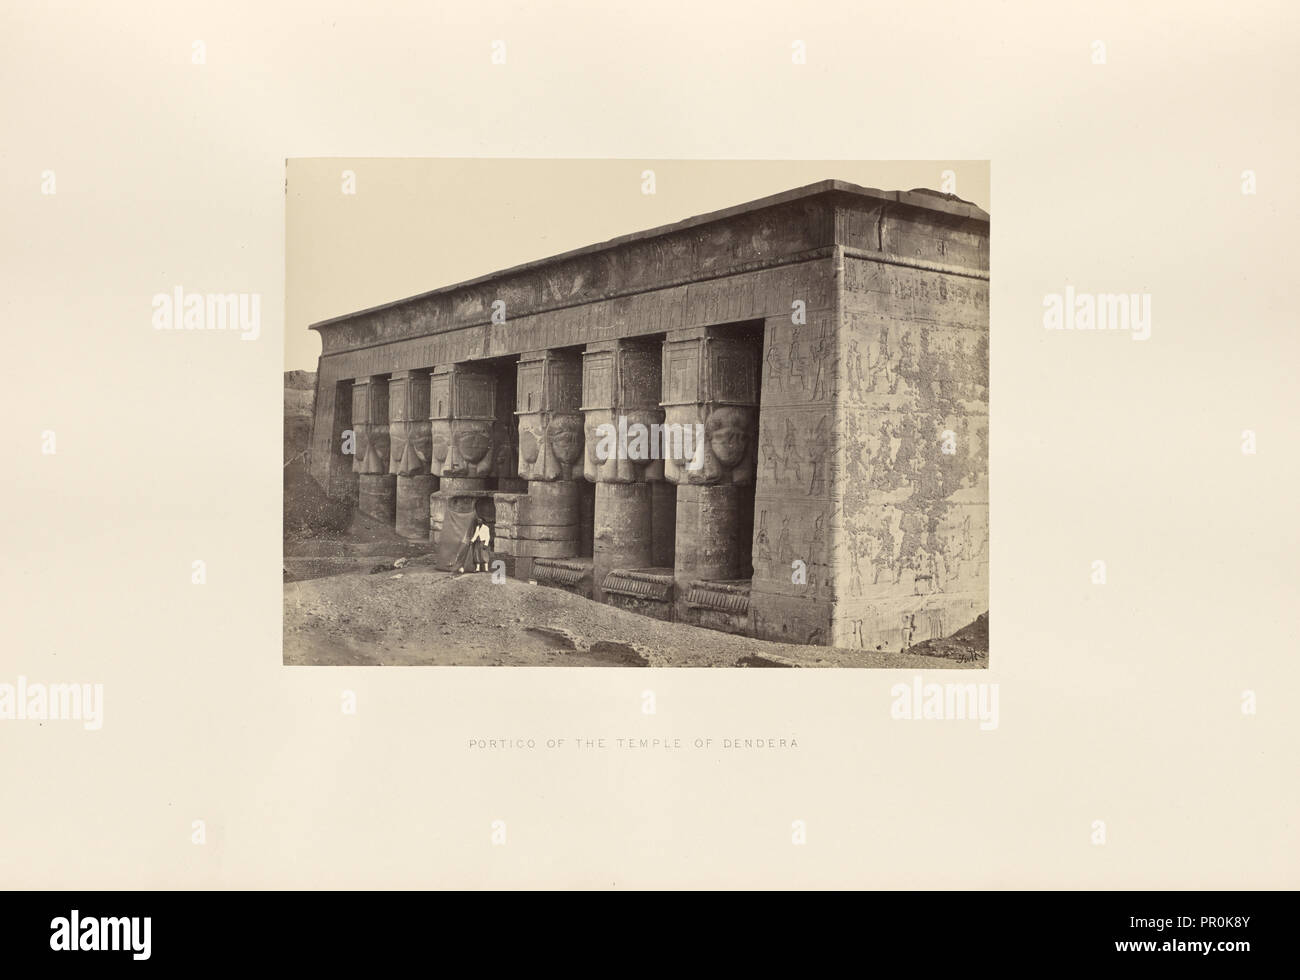 Portikus der Tempel von Dendera; Francis Frith, Englisch, 1822-1898, Dendera, Ägypten; 1857; Eiklar silber Drucken Stockfoto